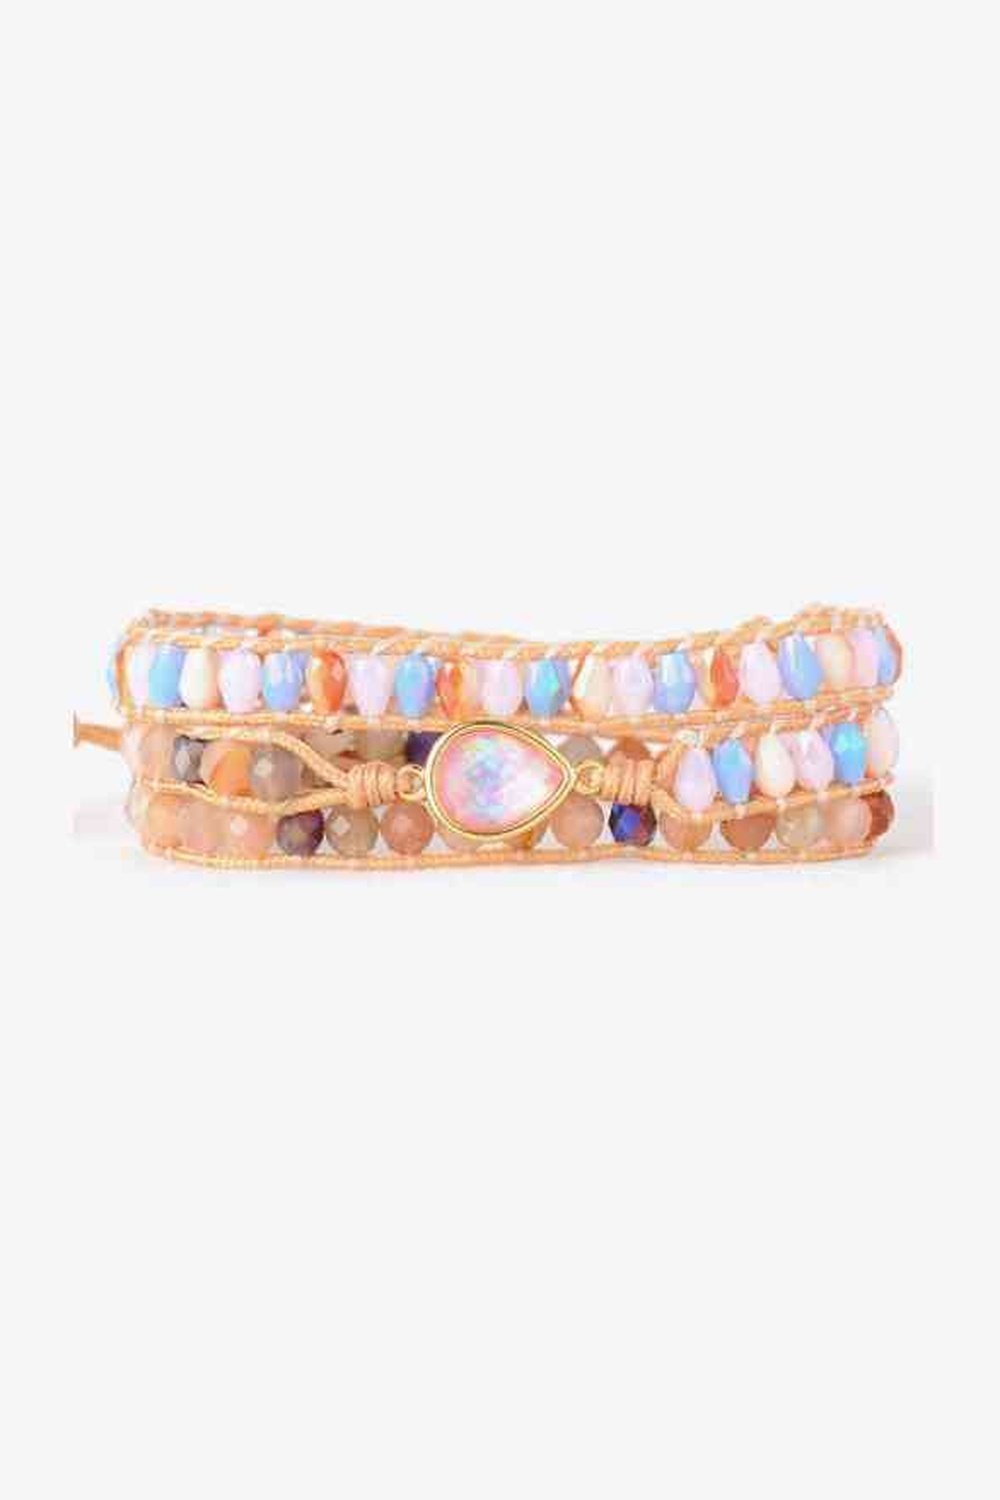 Opal Beaded Bracelet - Bracelets - FITGGINS